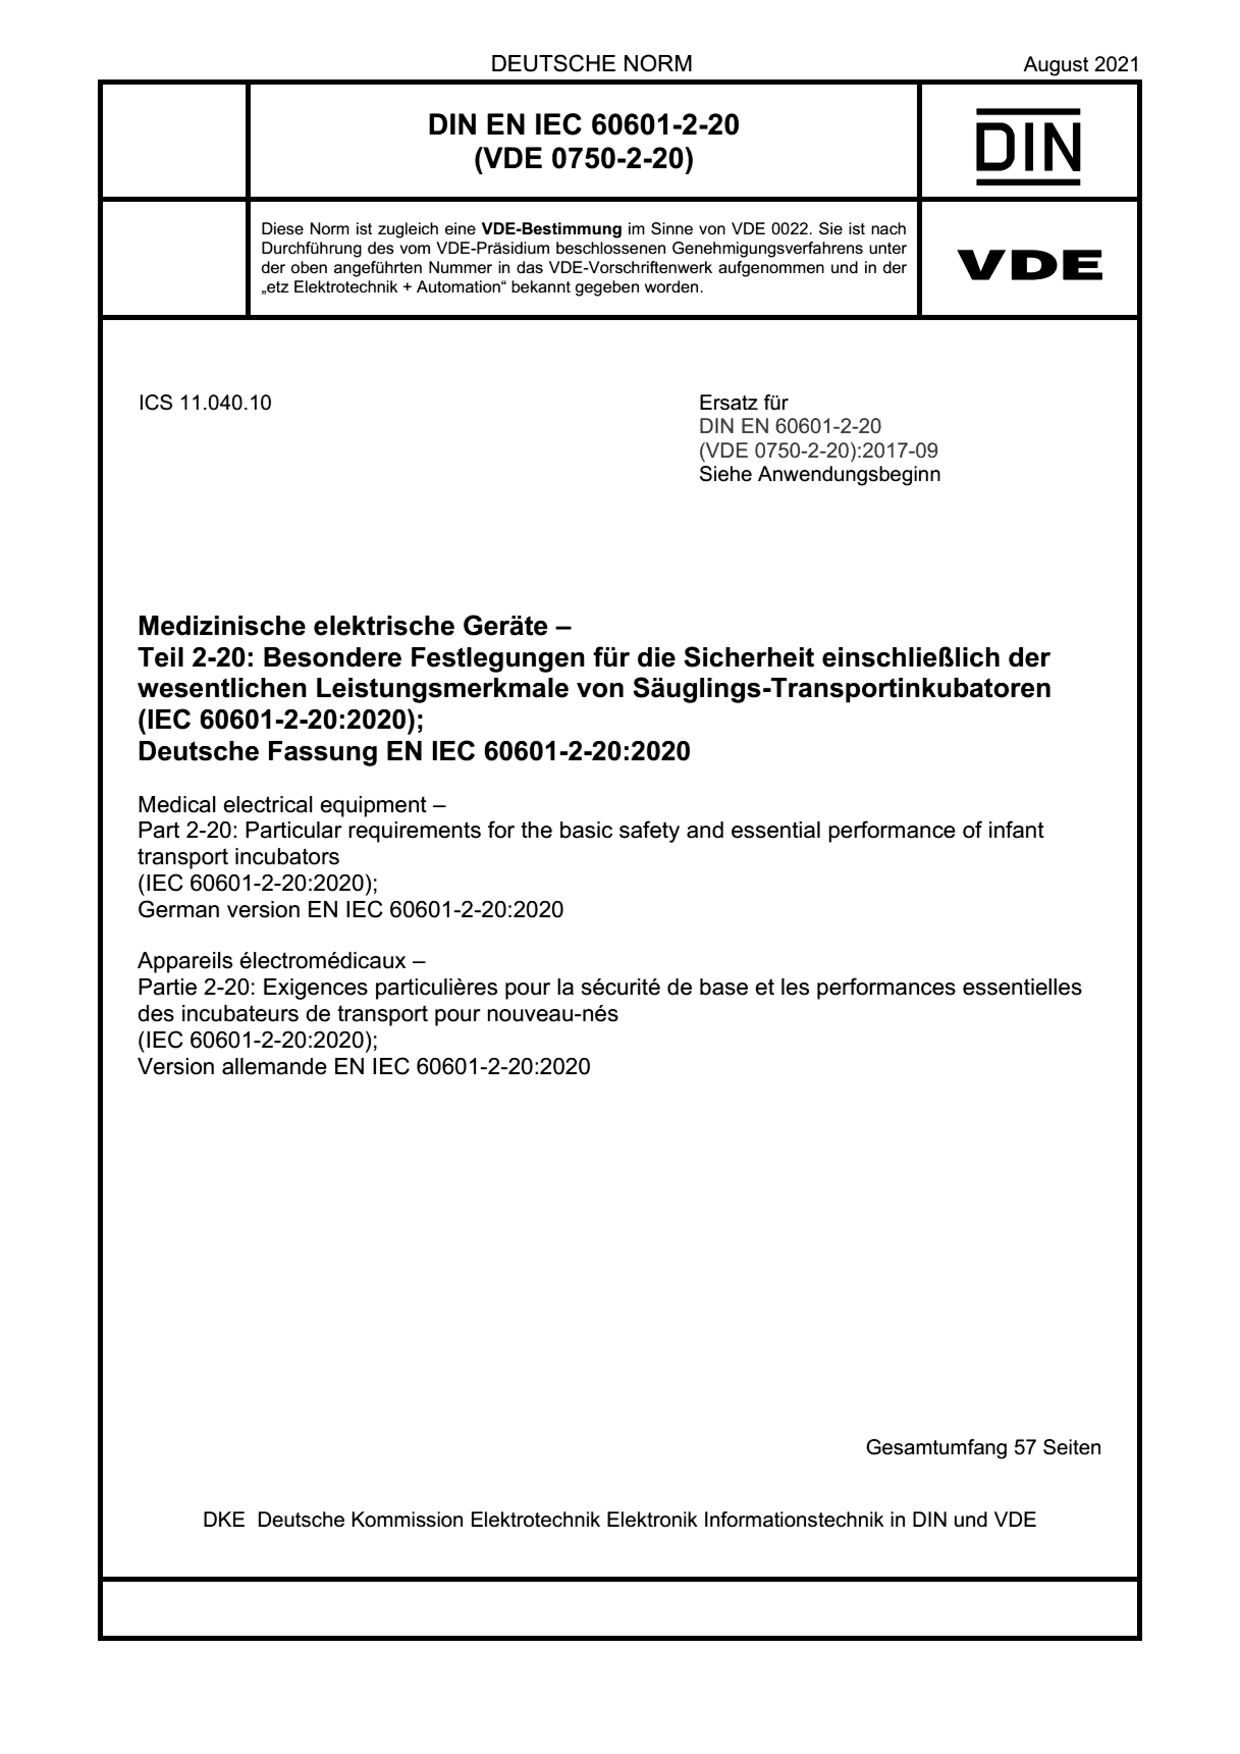 DIN EN IEC 60601-2-20:2021